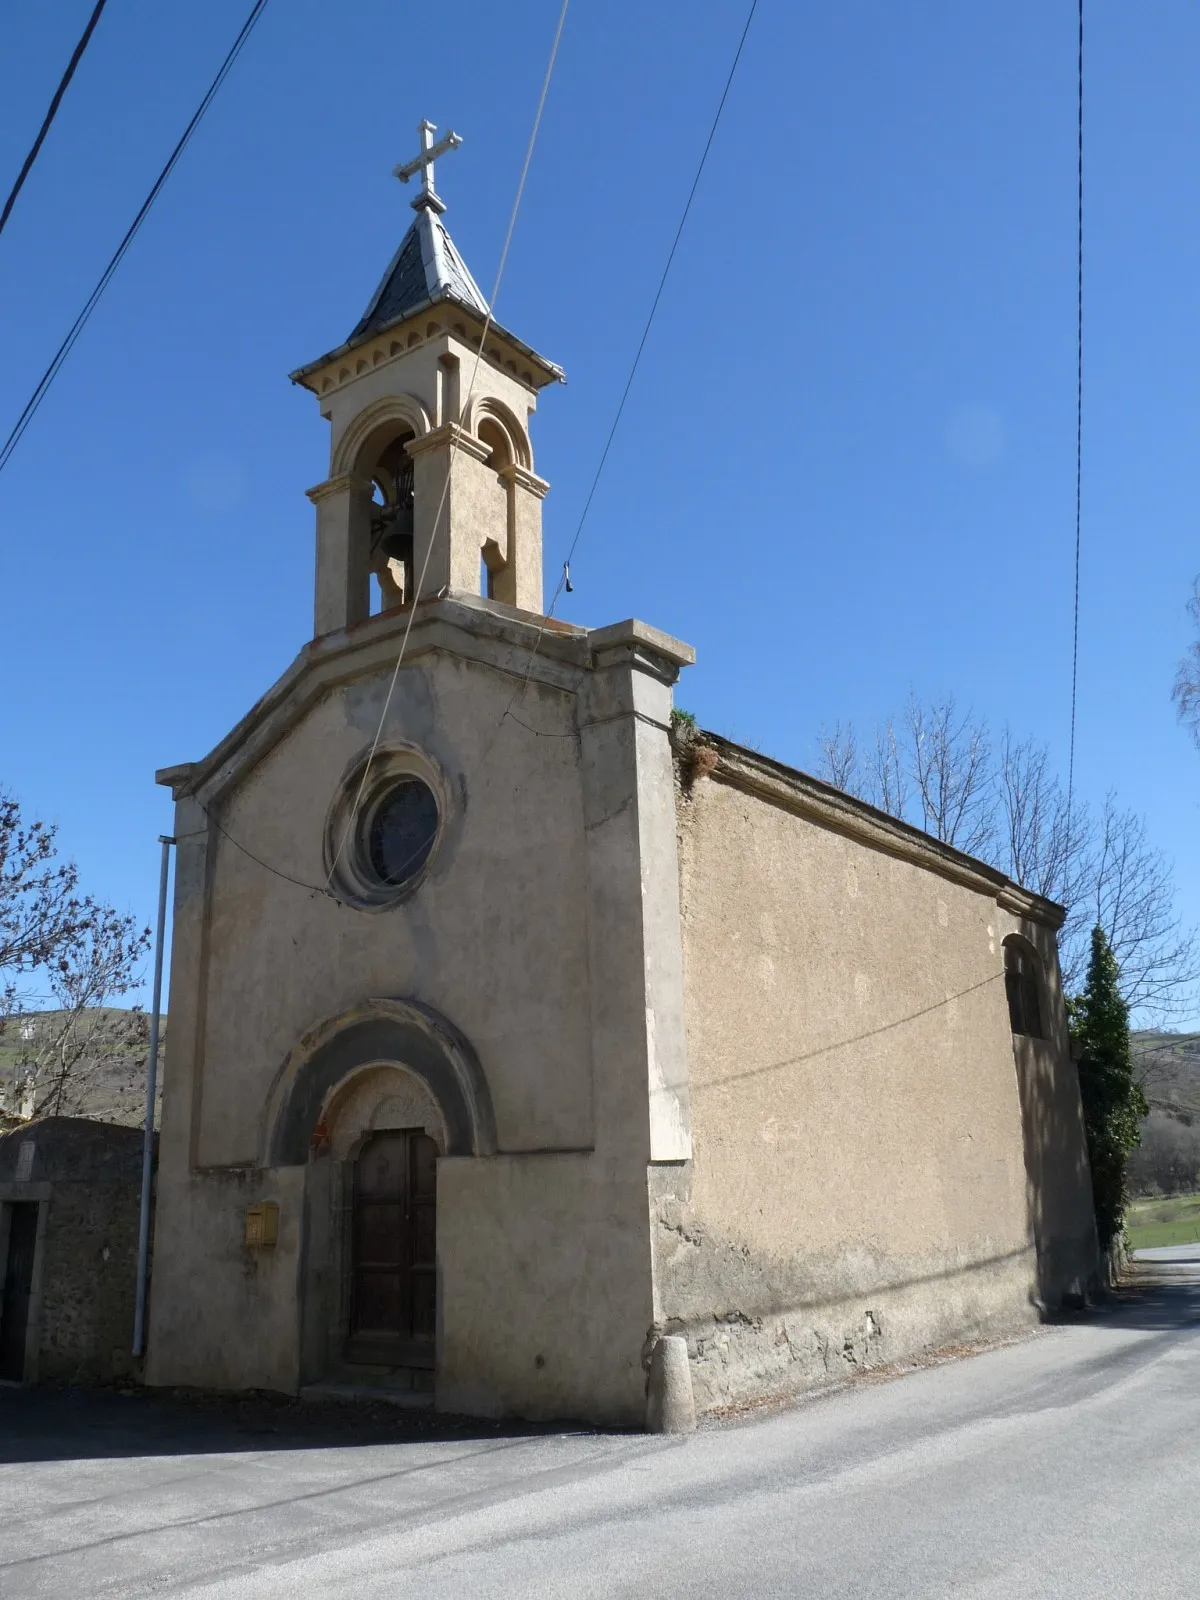 Photo showing: Chapelle de Ro, Saillagouse, Pyrénées-Orientales, France